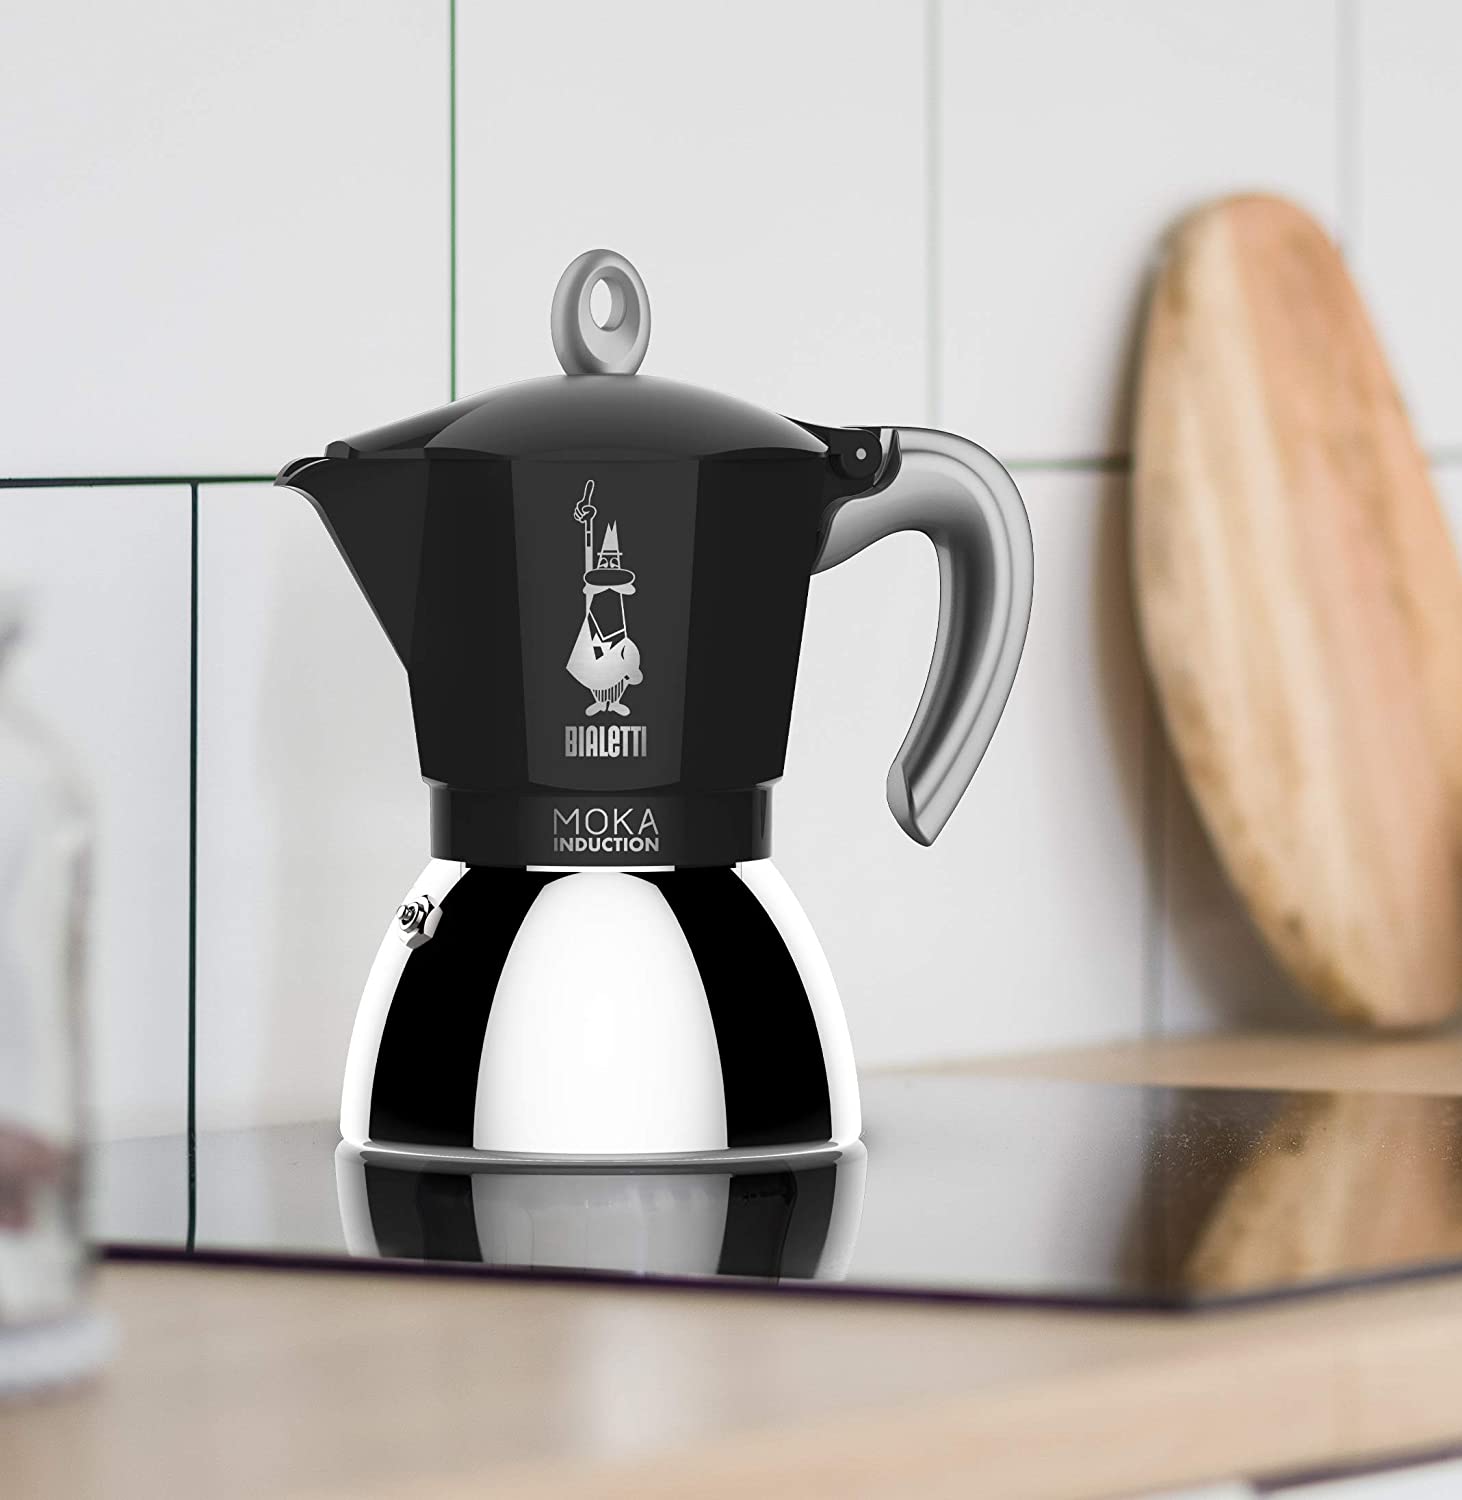 Третье дополнительное изображение для товара Гейзерная кофеварка Bialetti Moka Induction 6934NP для индукционных плит (4 порции, 150 мл), черная